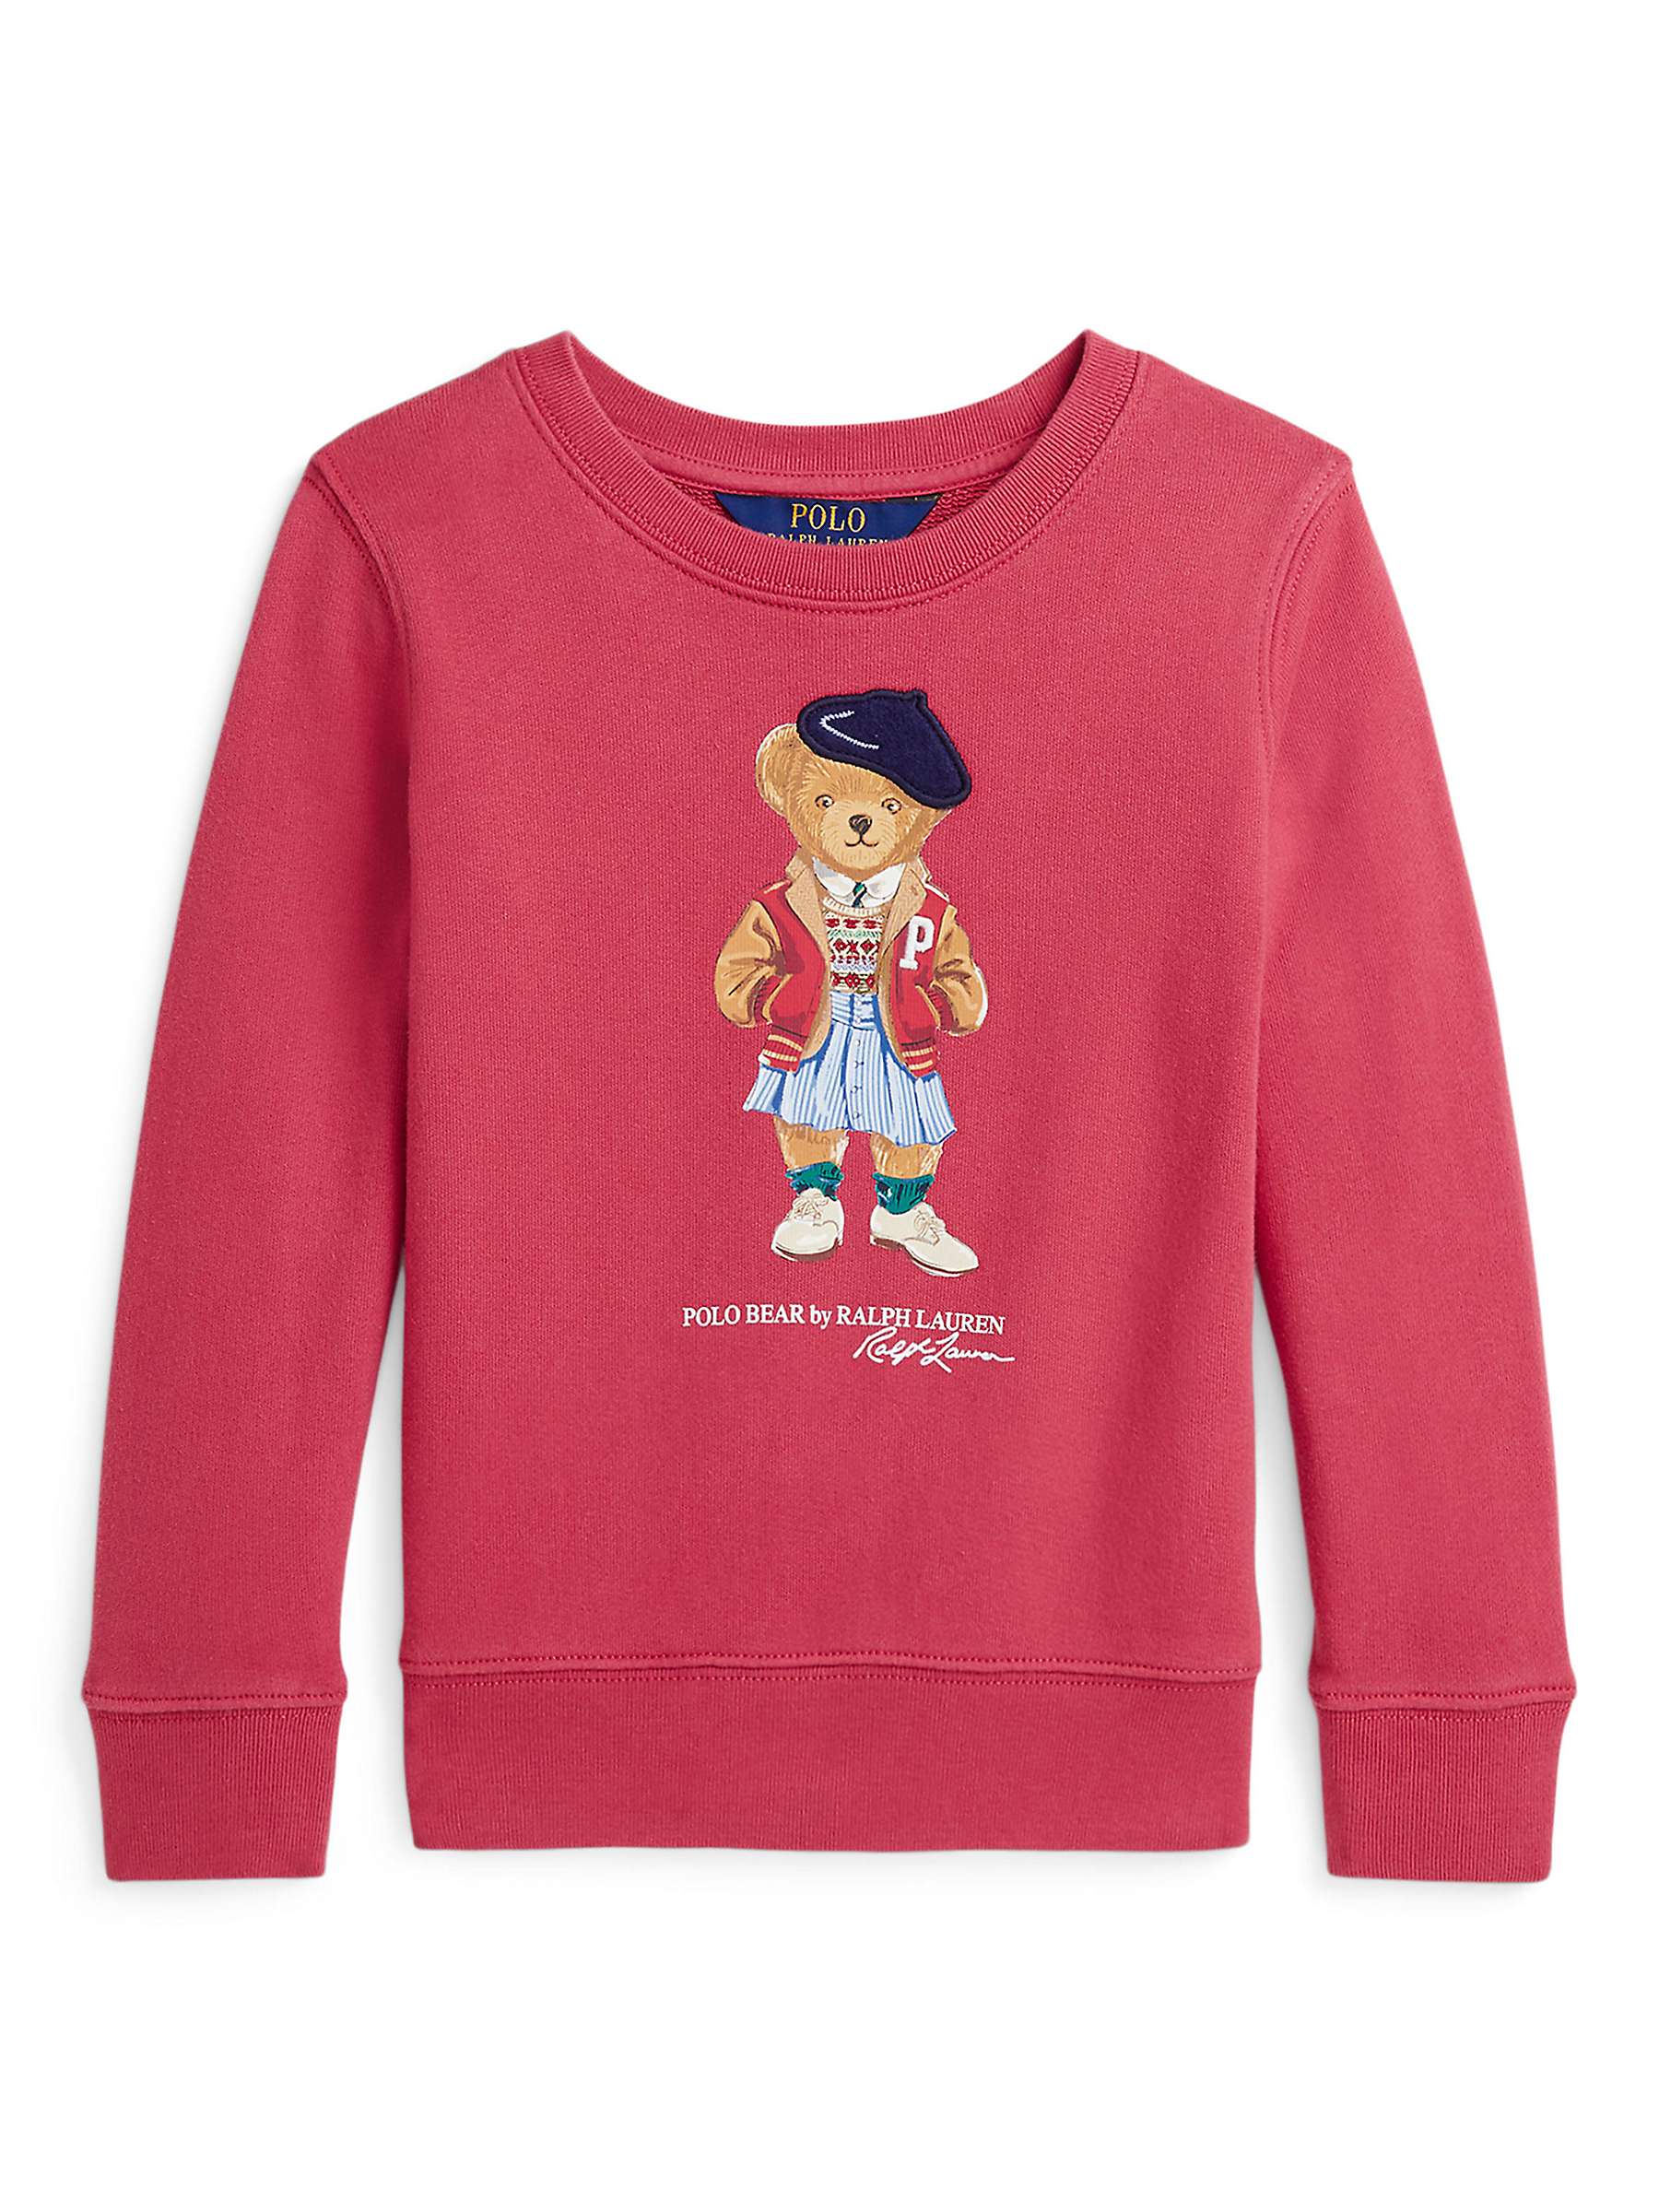 Buy Ralph Lauren Kids' Polo Bear Fleece Sweatshirt, Nantucket Red Online at johnlewis.com